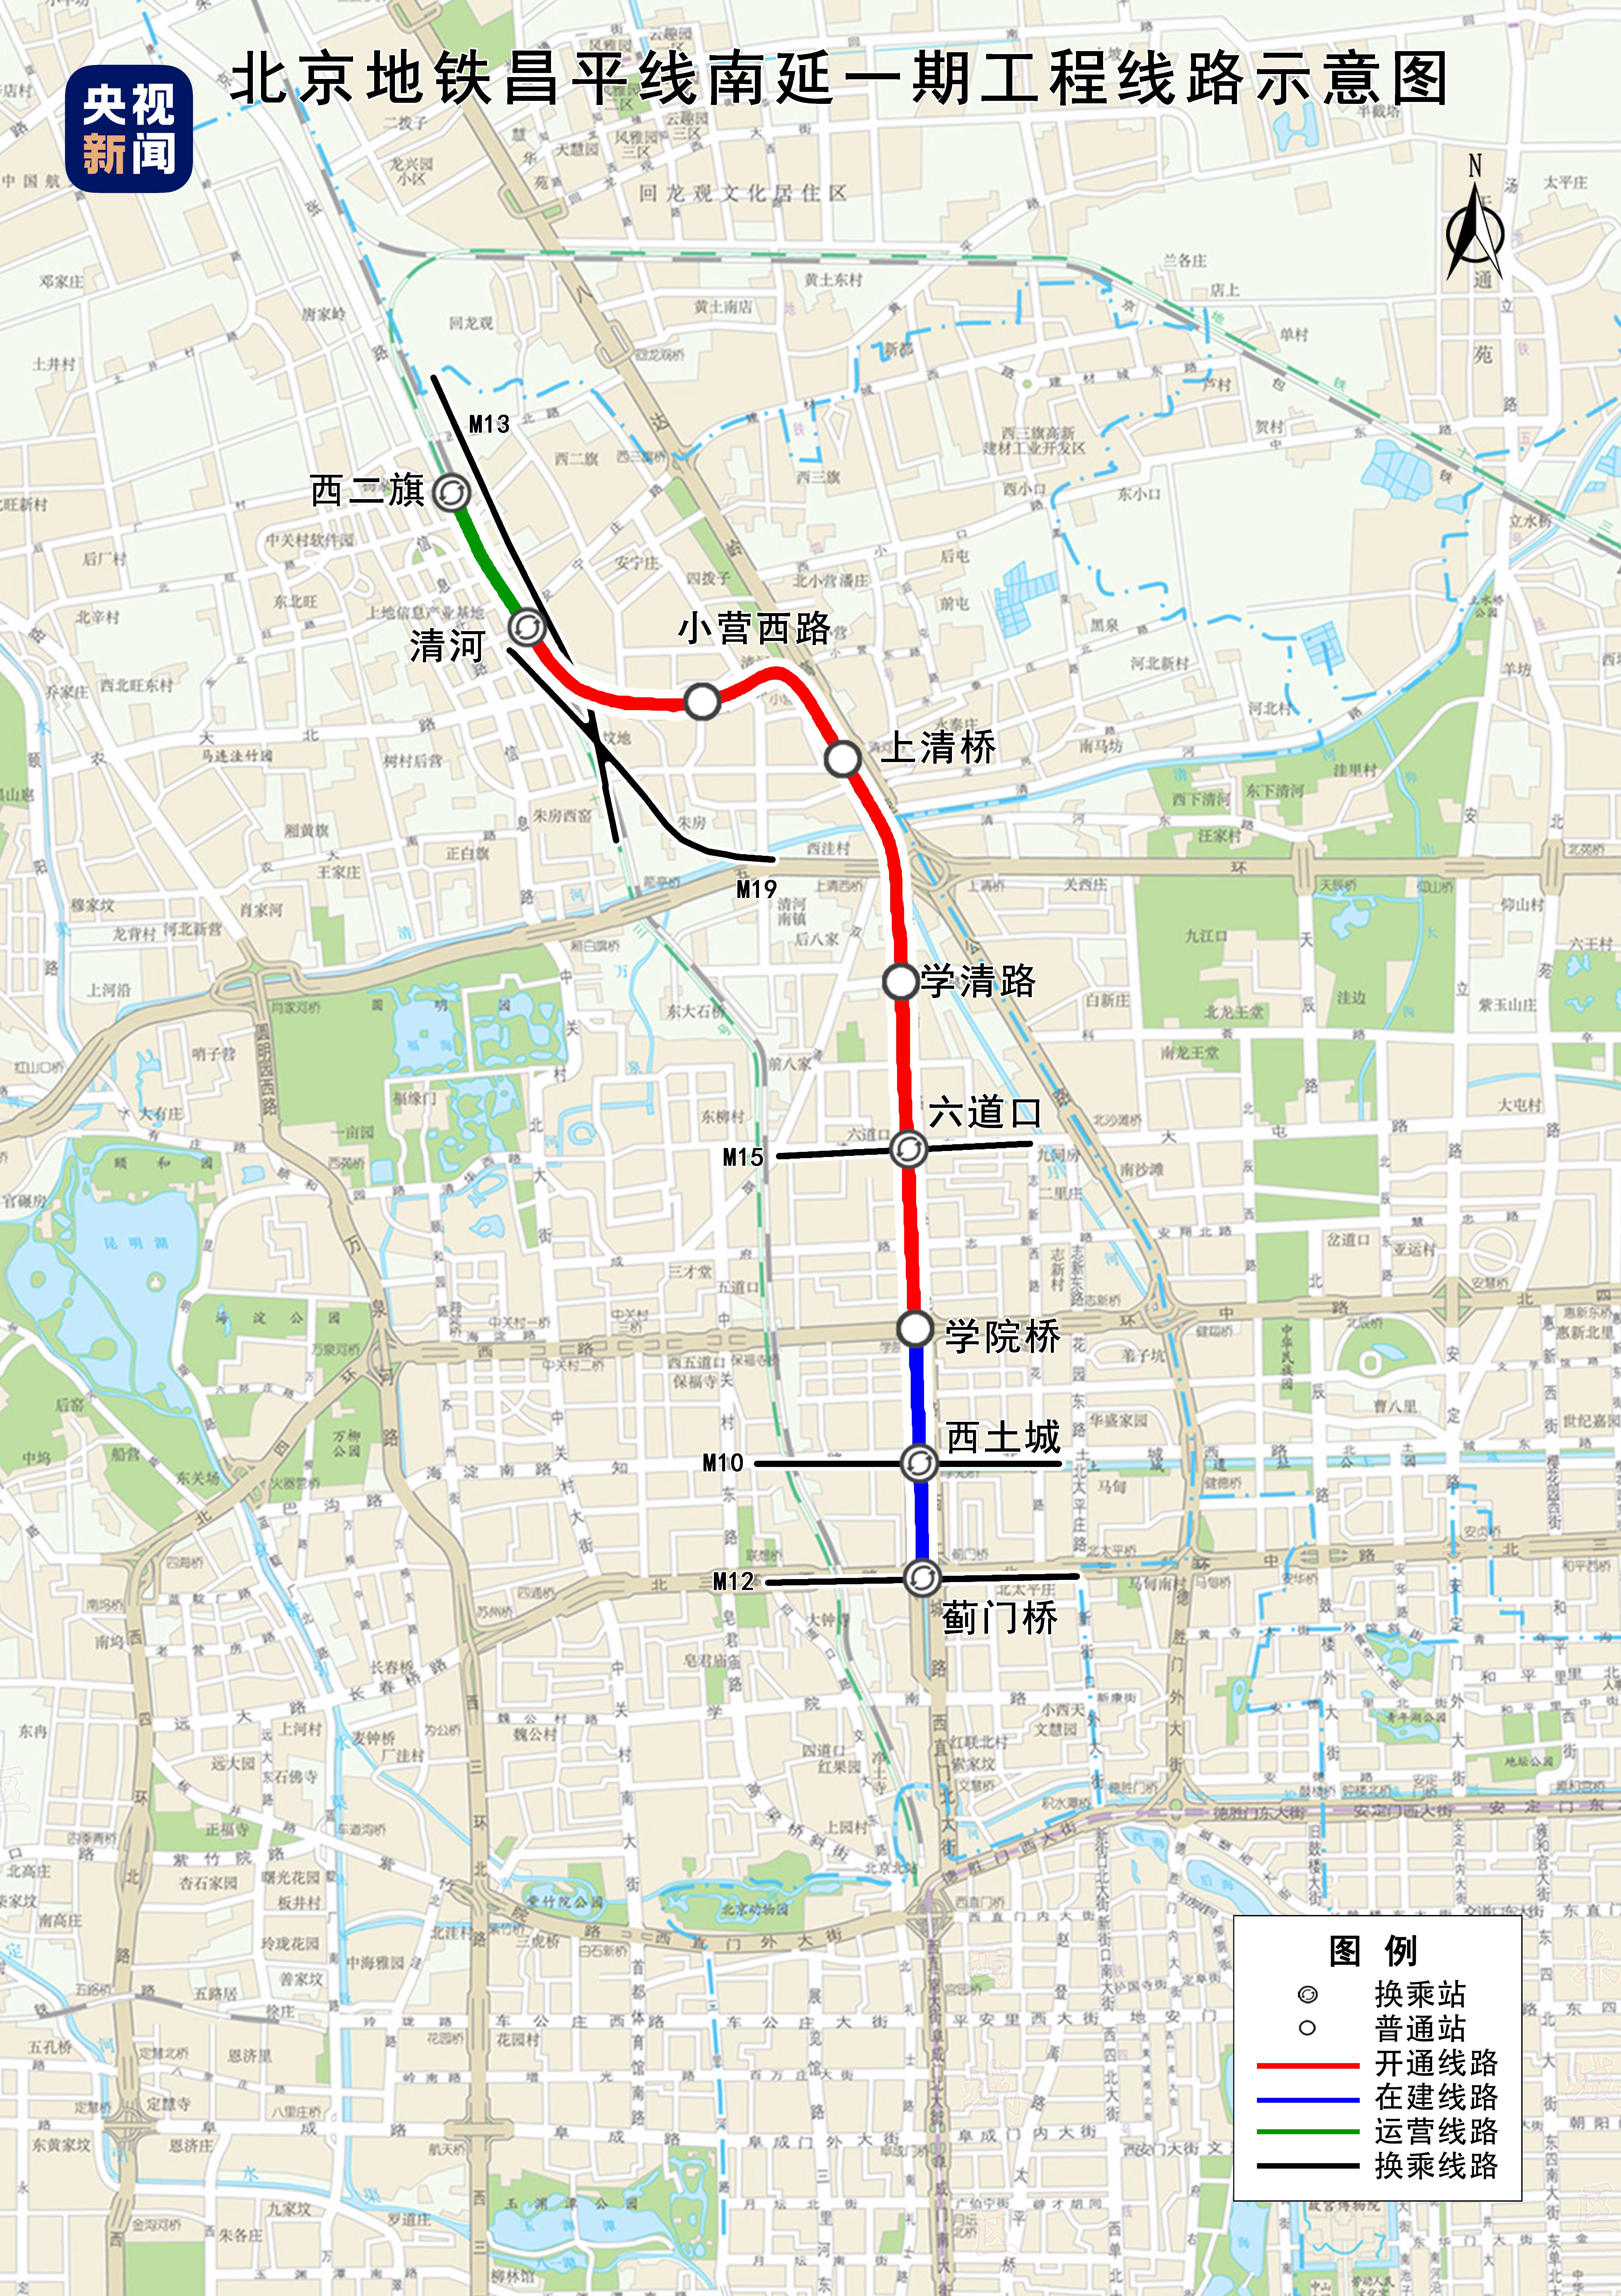 北京两条地铁新线进入空载试运行阶段